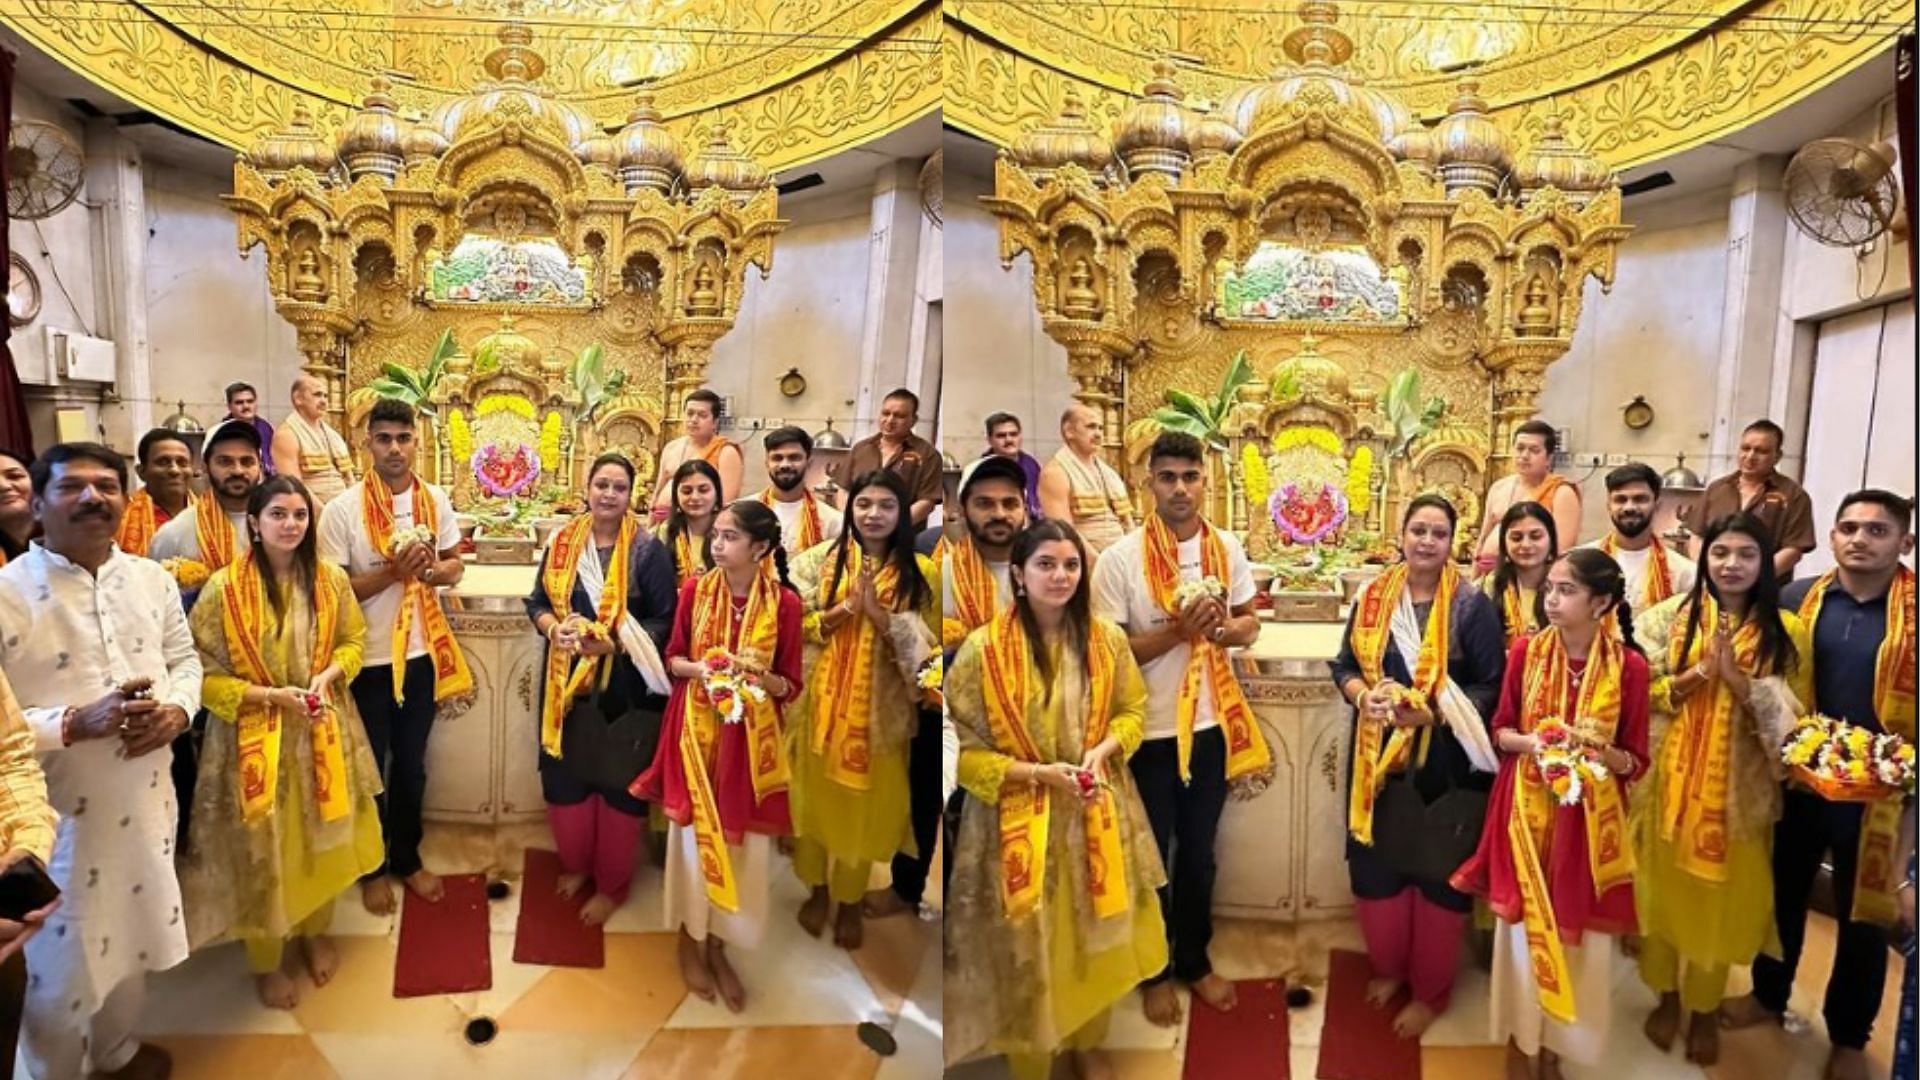 Ruturaj Gaikwad, Shardul Thakur, Tushar Deshpande and Rajvardhan Hangargekar seek blessings at Siddhivinayak Temple in Mumbai